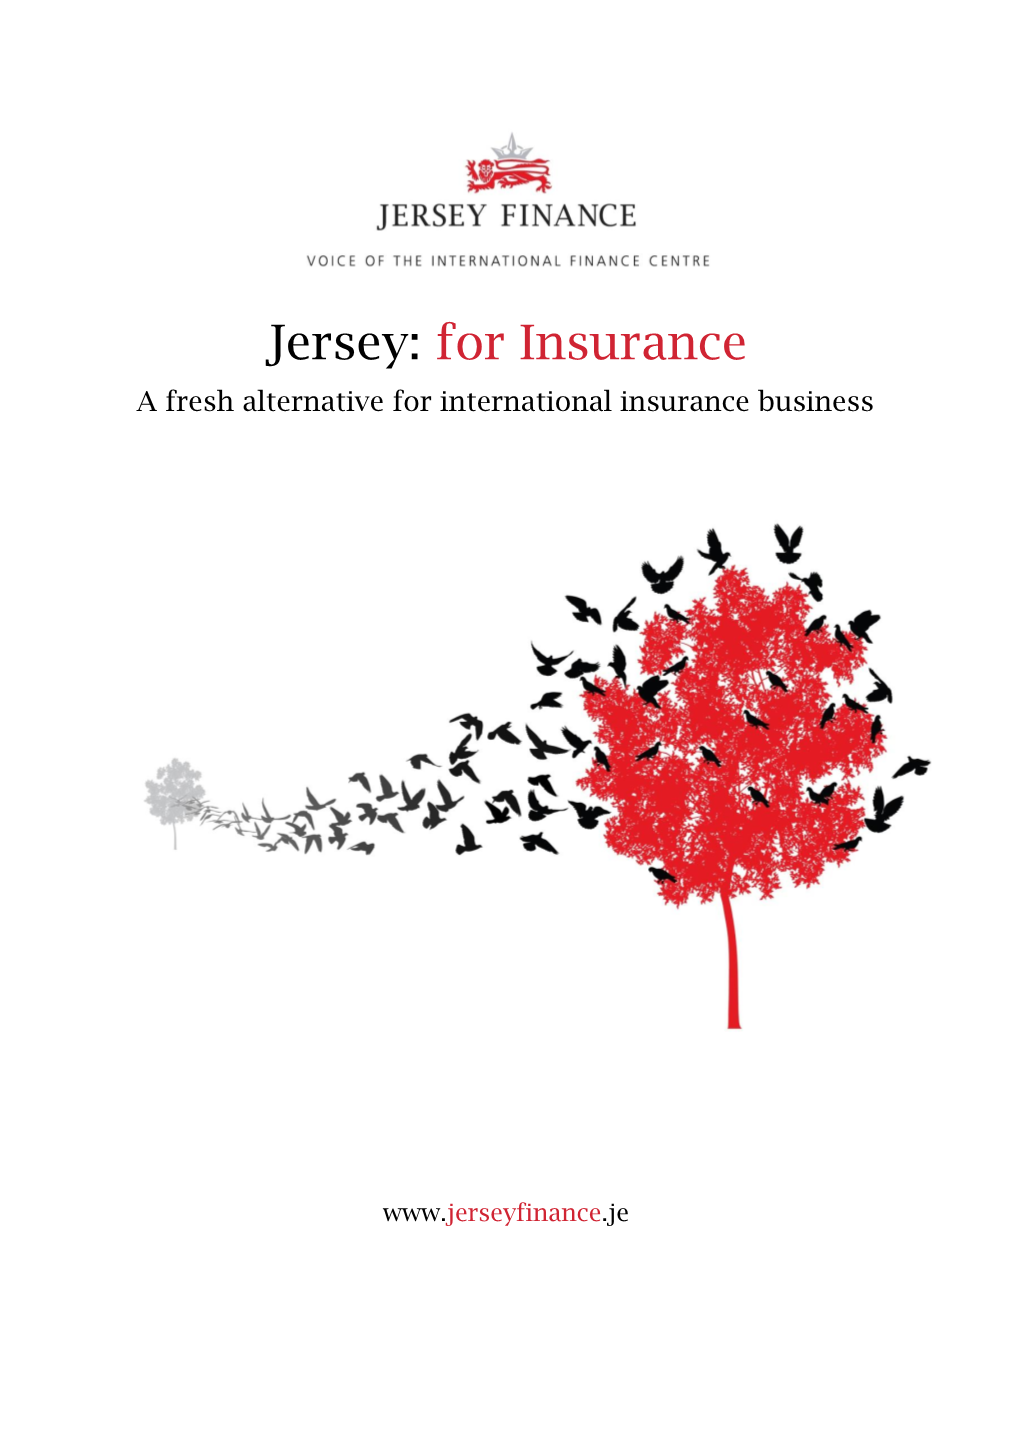 For Insurance a Fresh Alternative for International Insurance Business